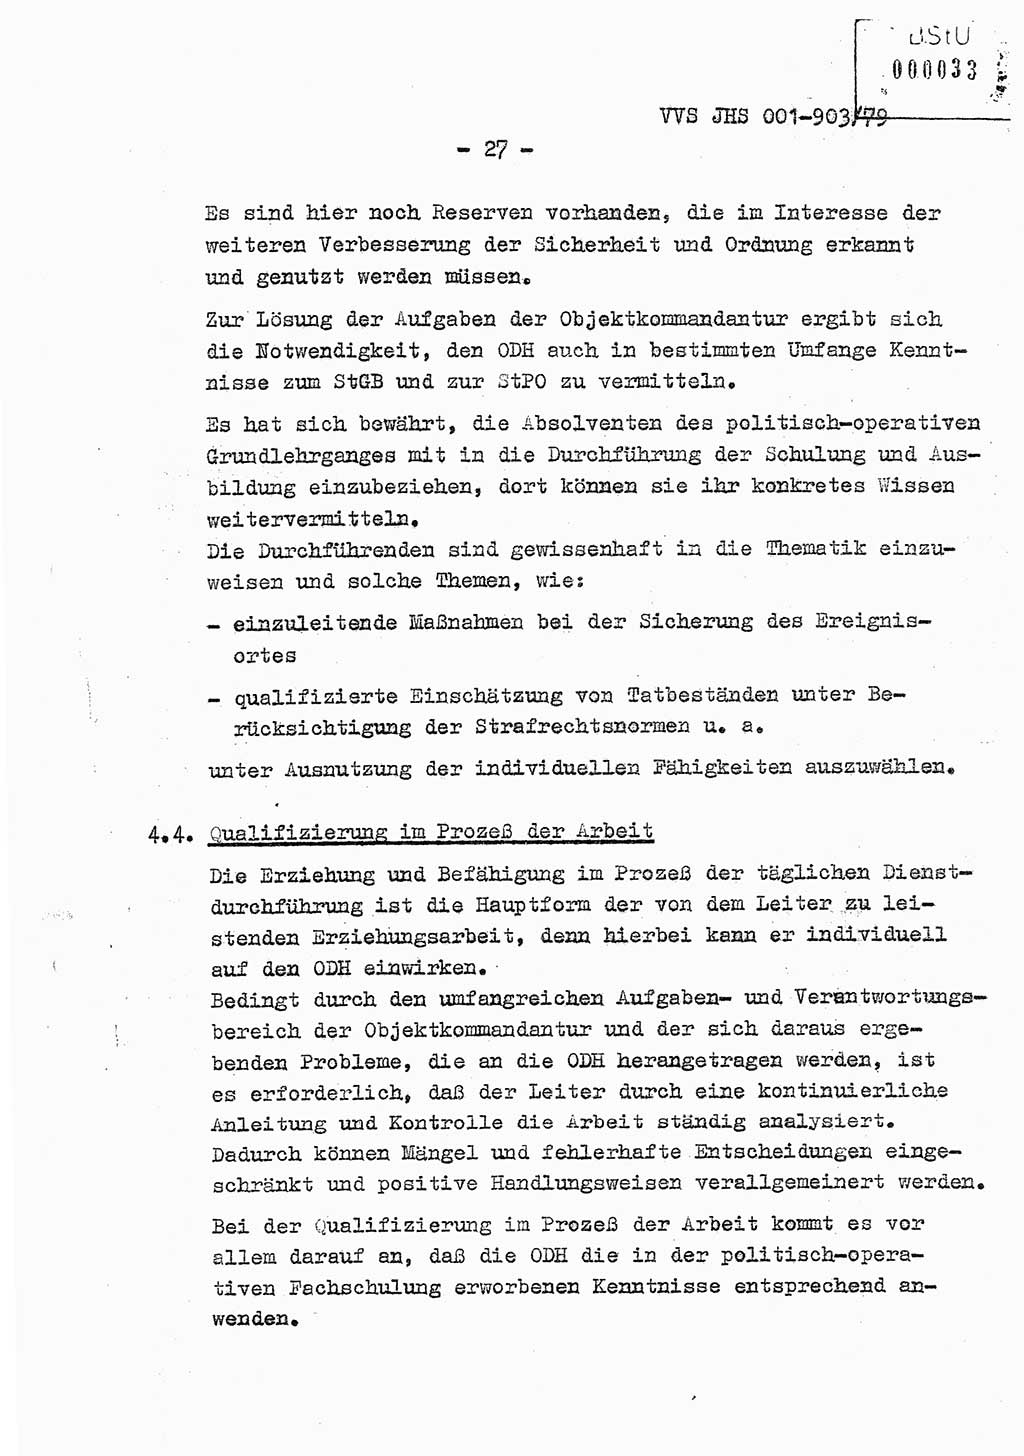 Fachschulabschlußarbeit Oberleutnant Jochen Pfeffer (HA Ⅸ/AGL), Ministerium für Staatssicherheit (MfS) [Deutsche Demokratische Republik (DDR)], Juristische Hochschule (JHS), Vertrauliche Verschlußsache (VVS) 001-903/79, Potsdam 1979, Seite 27 (FS-Abschl.-Arb. MfS DDR JHS VVS 001-903/79 1979, S. 27)